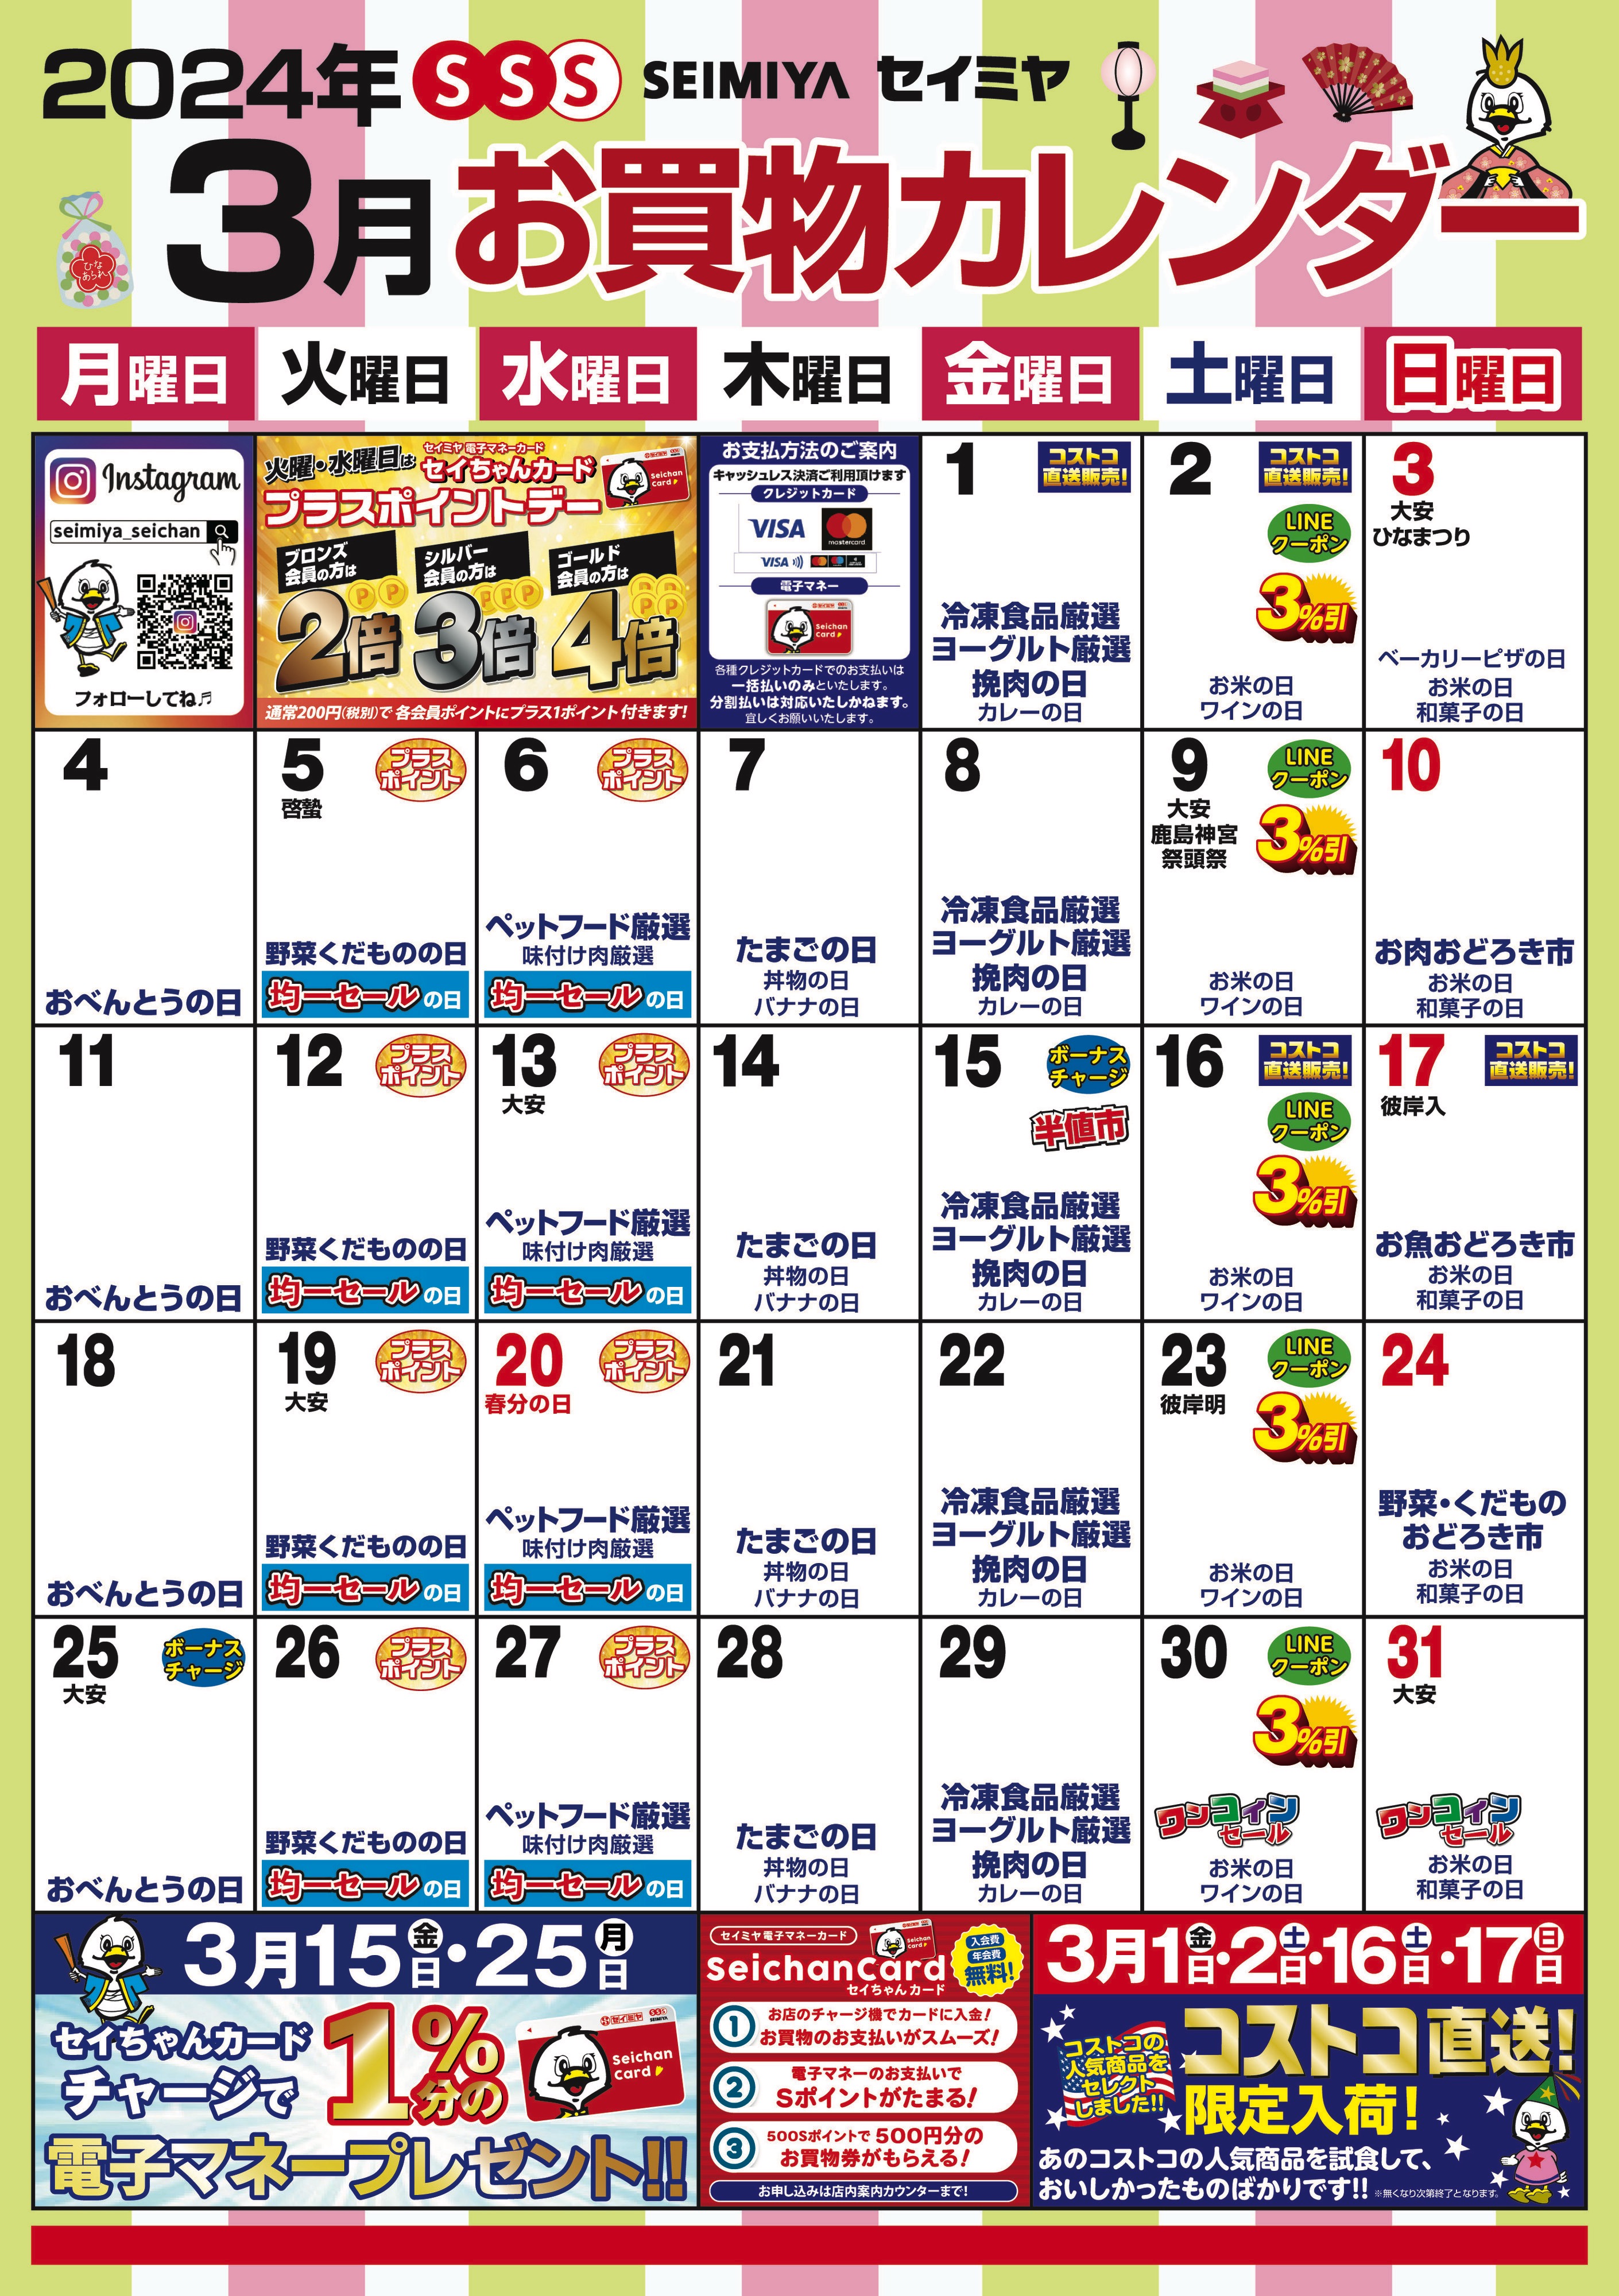 3月のお買物カレンダー